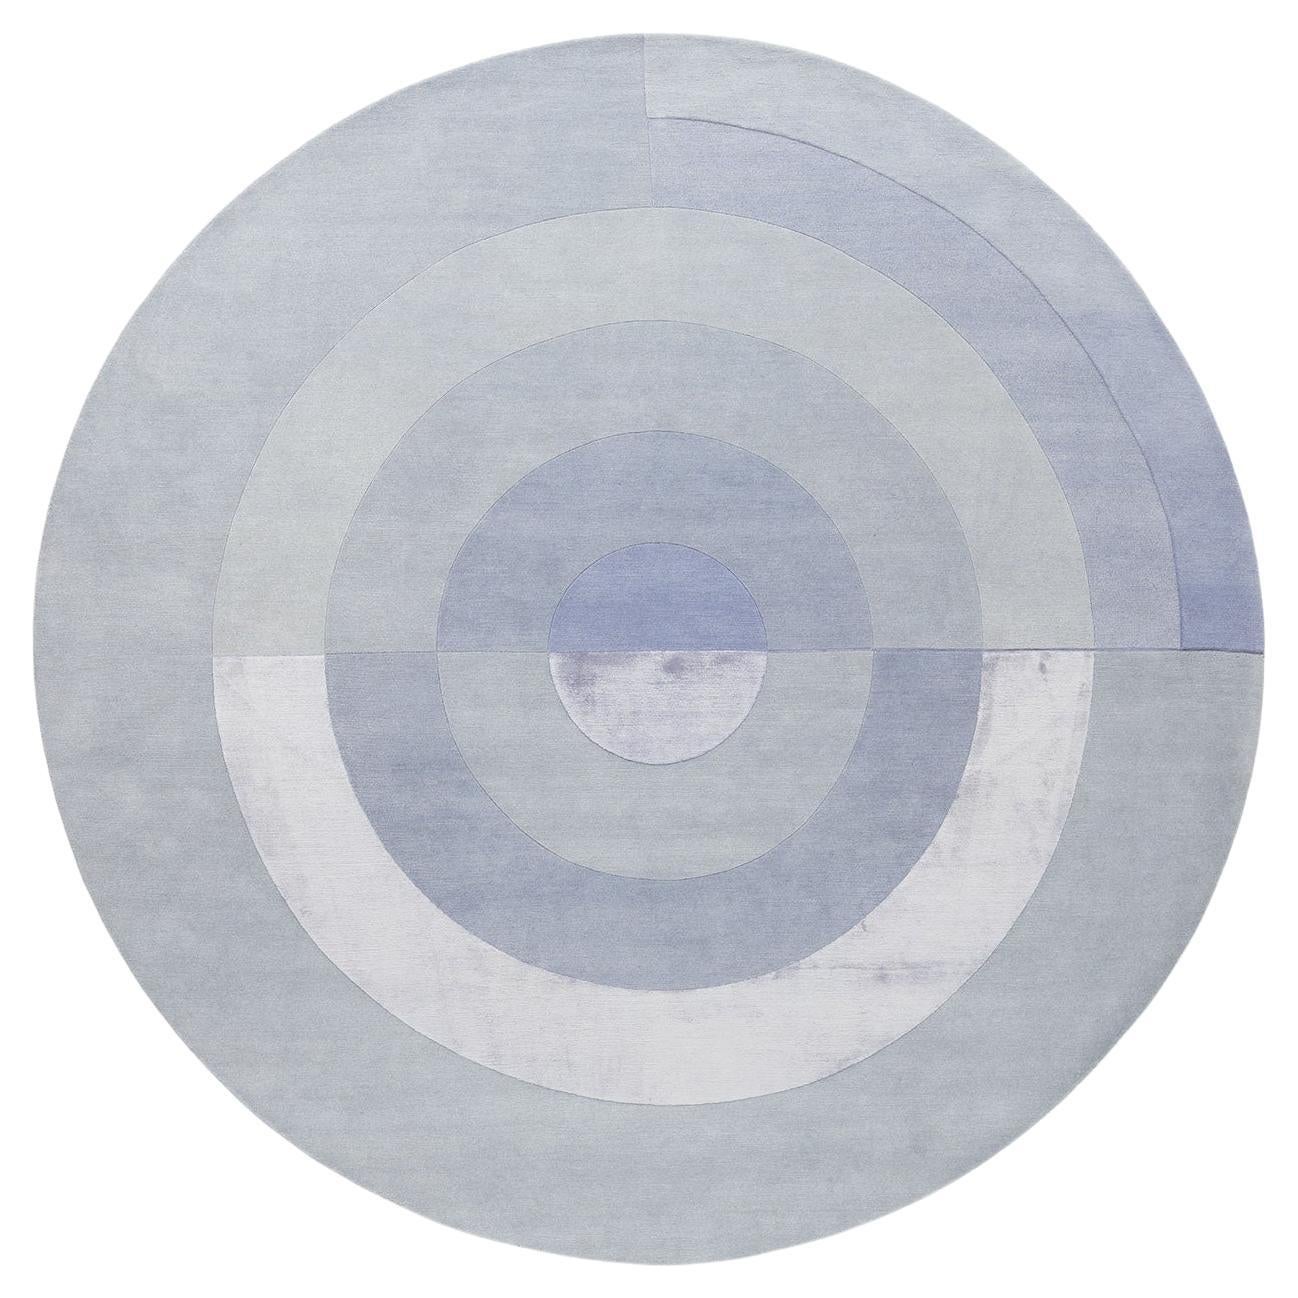 cc-tapis Bliss-Teppich in rundem Monocolor von Mae Engelgeer